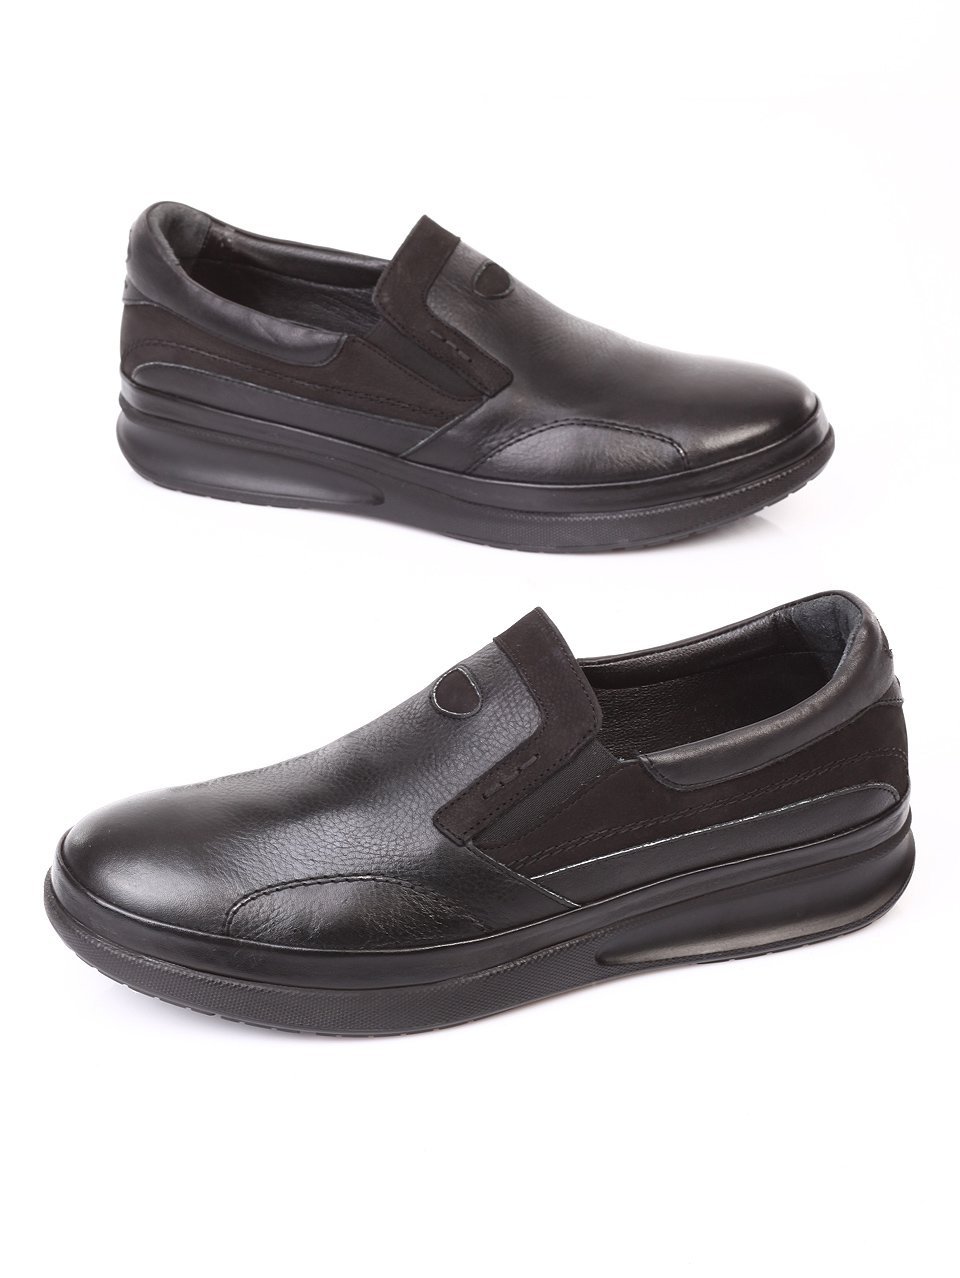 Мъжки обувки от естествена кожа и естествен набук 7AT-171193 black